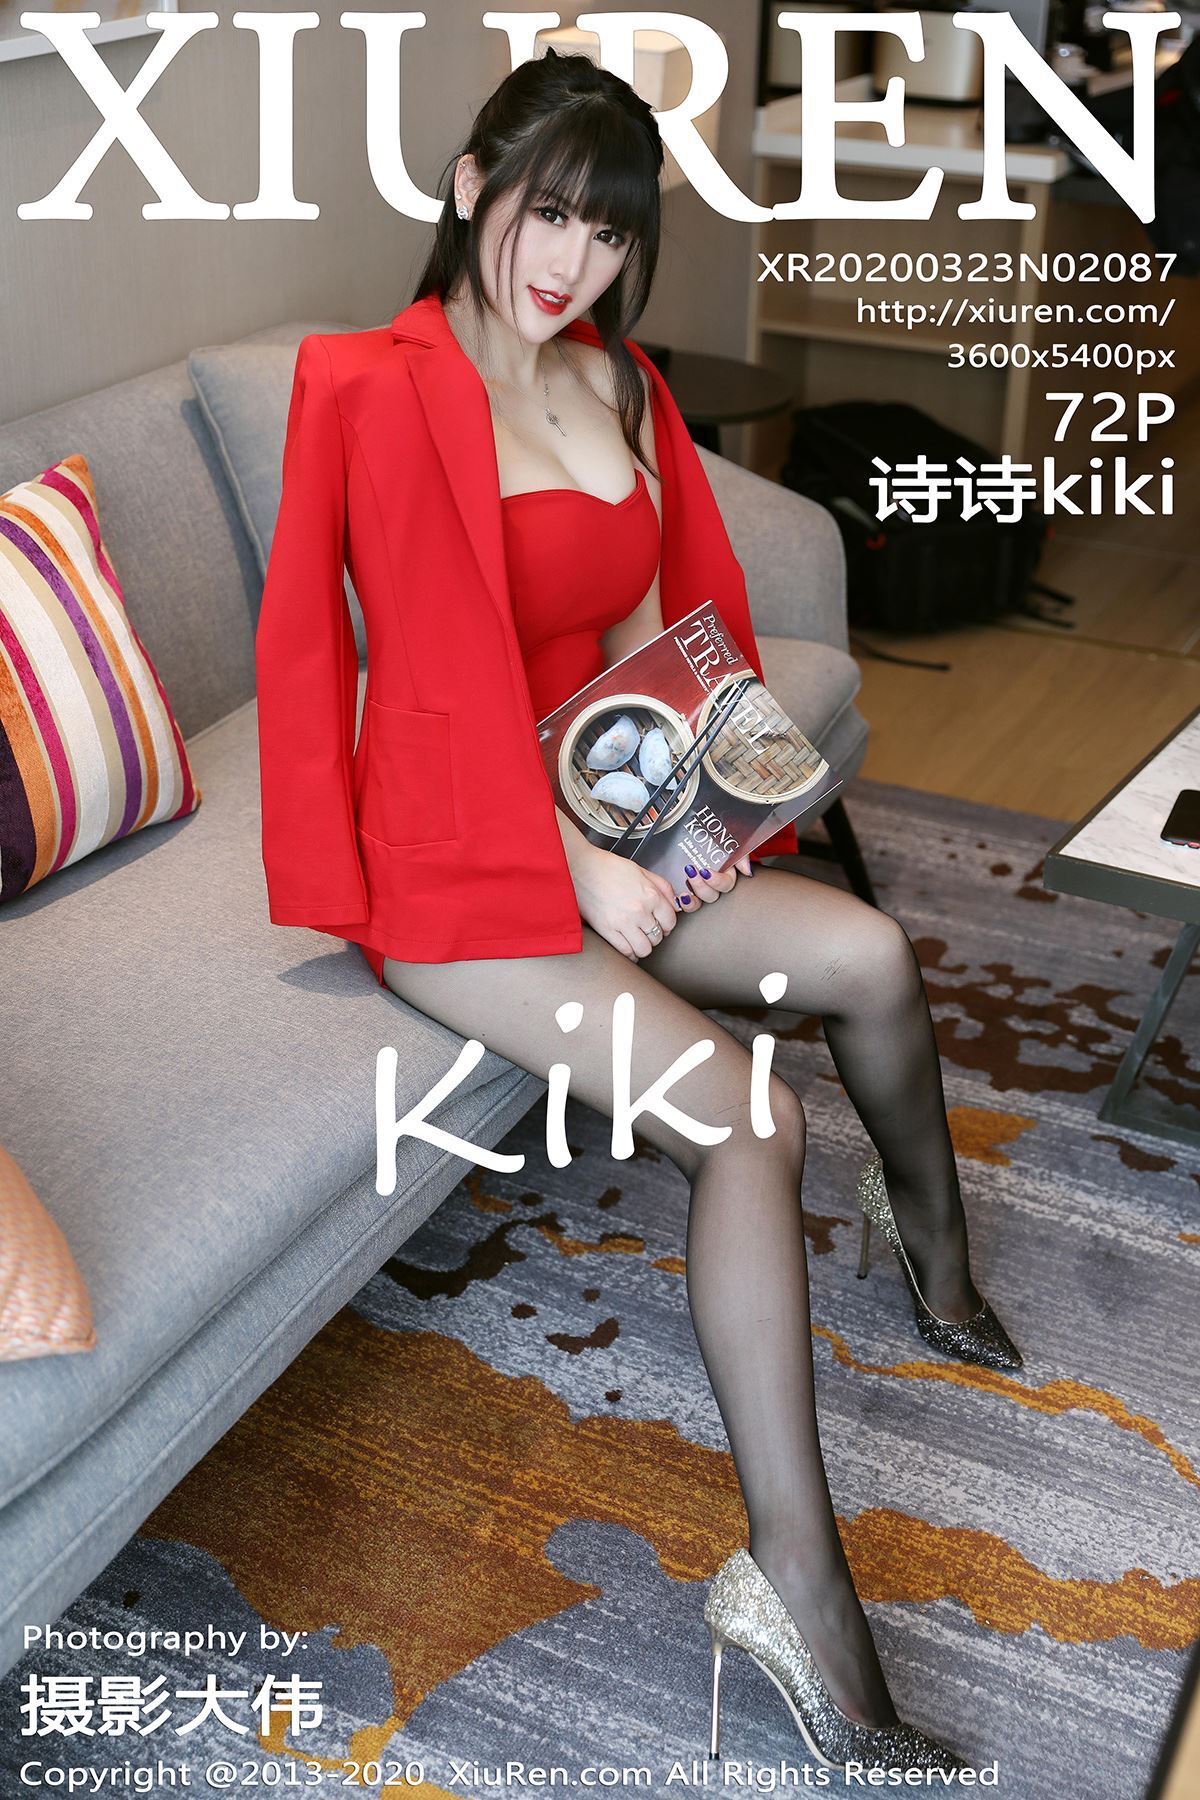 Xiuren.com.2020.03.23 no.2087 shishikiki